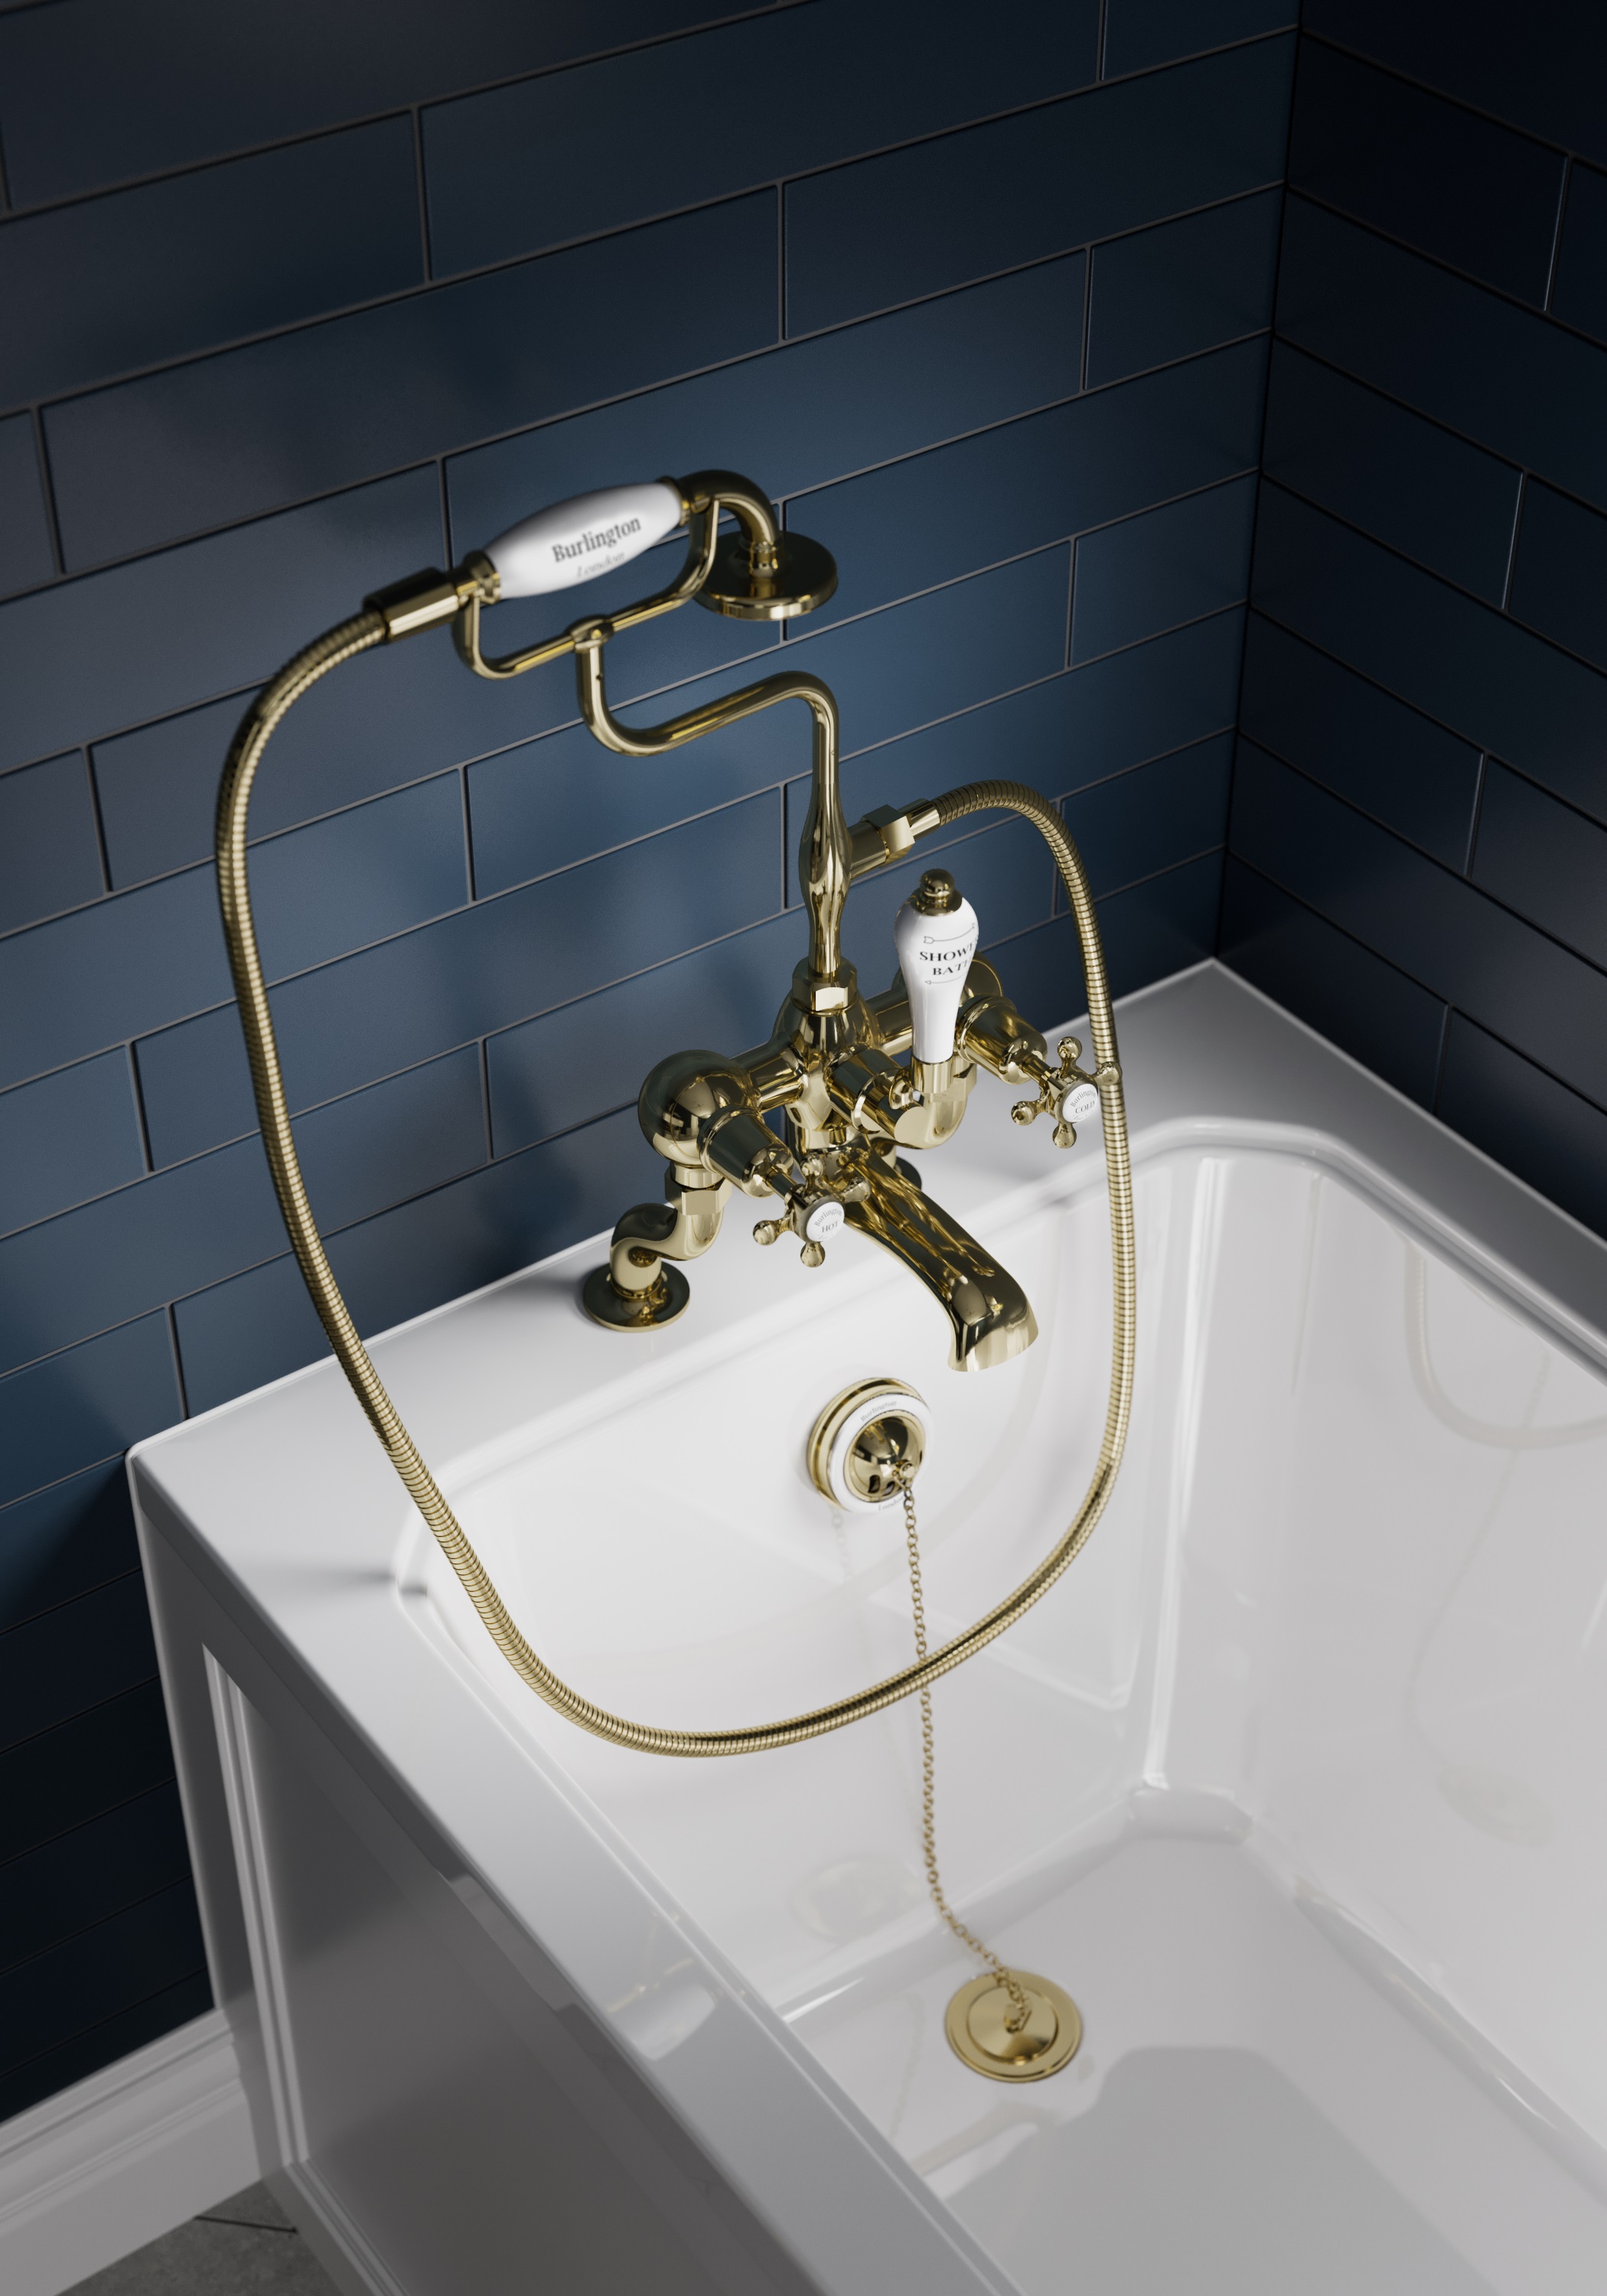 DECO HOME salone angliškos klasikos vonios kambario įrangos BURLINGTON naujiena - aukso spalvos detalės!